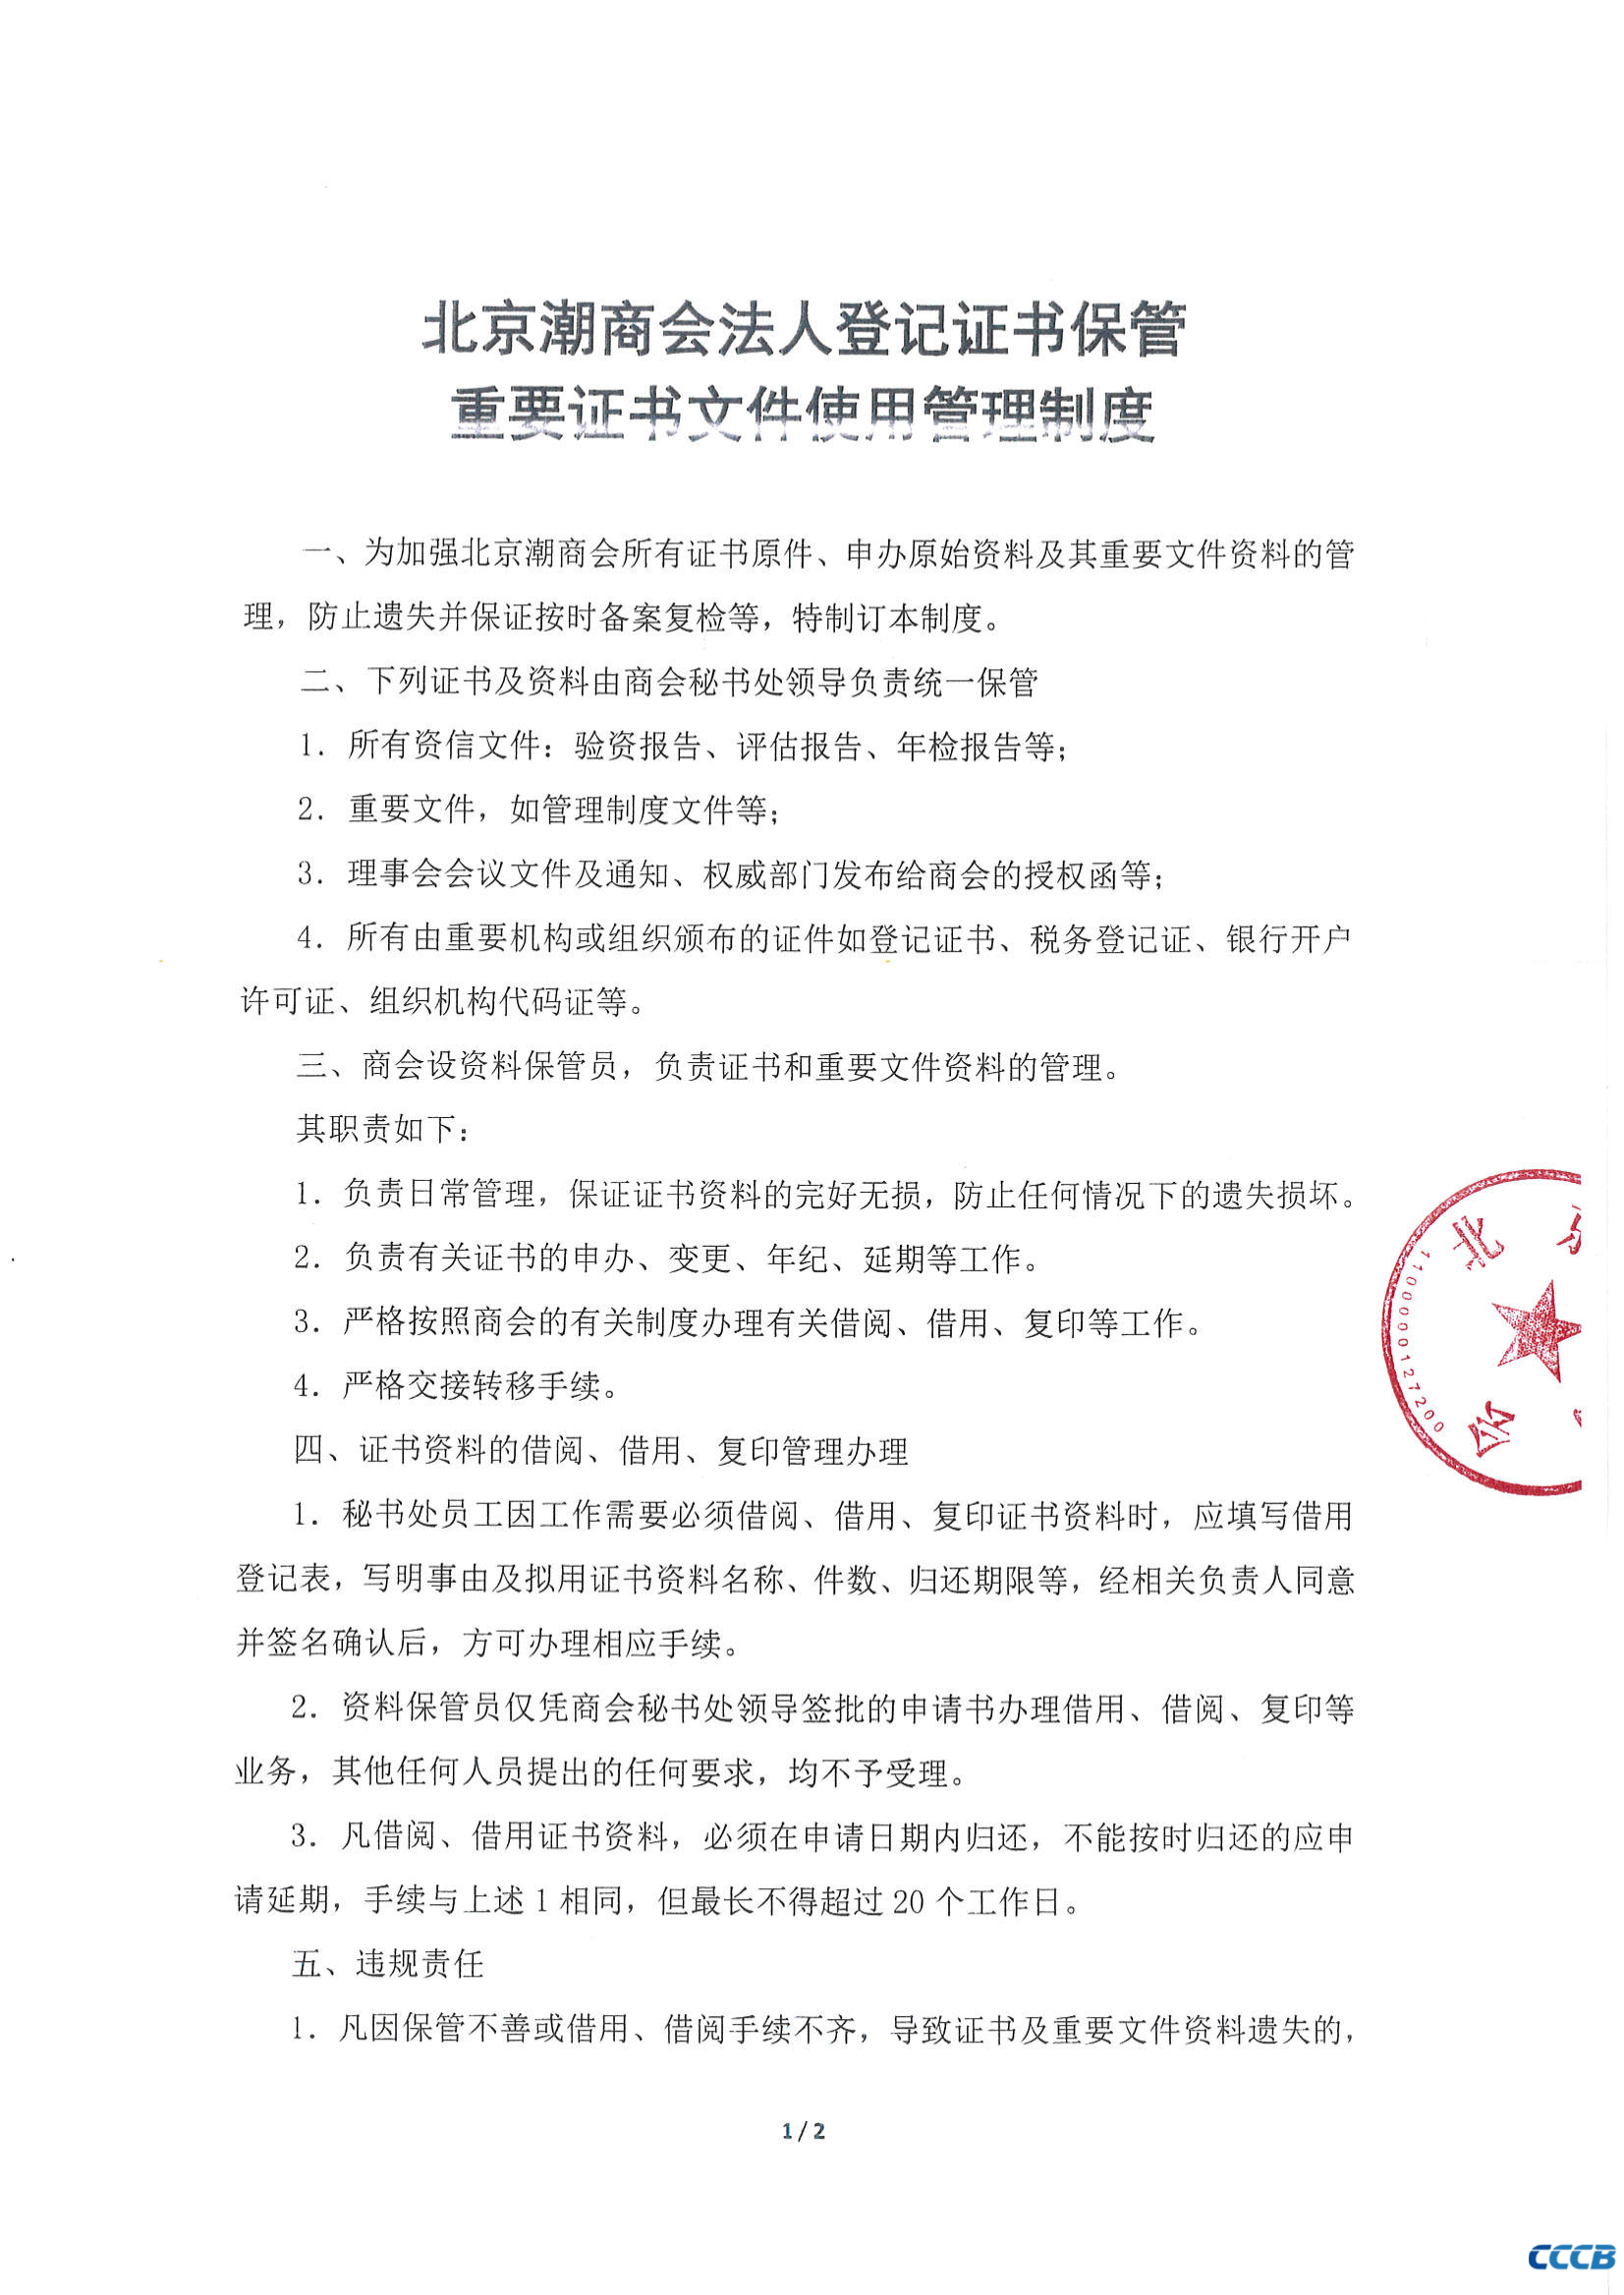 北京潮商会法人登记证书保管重要证书文件使用管理制度